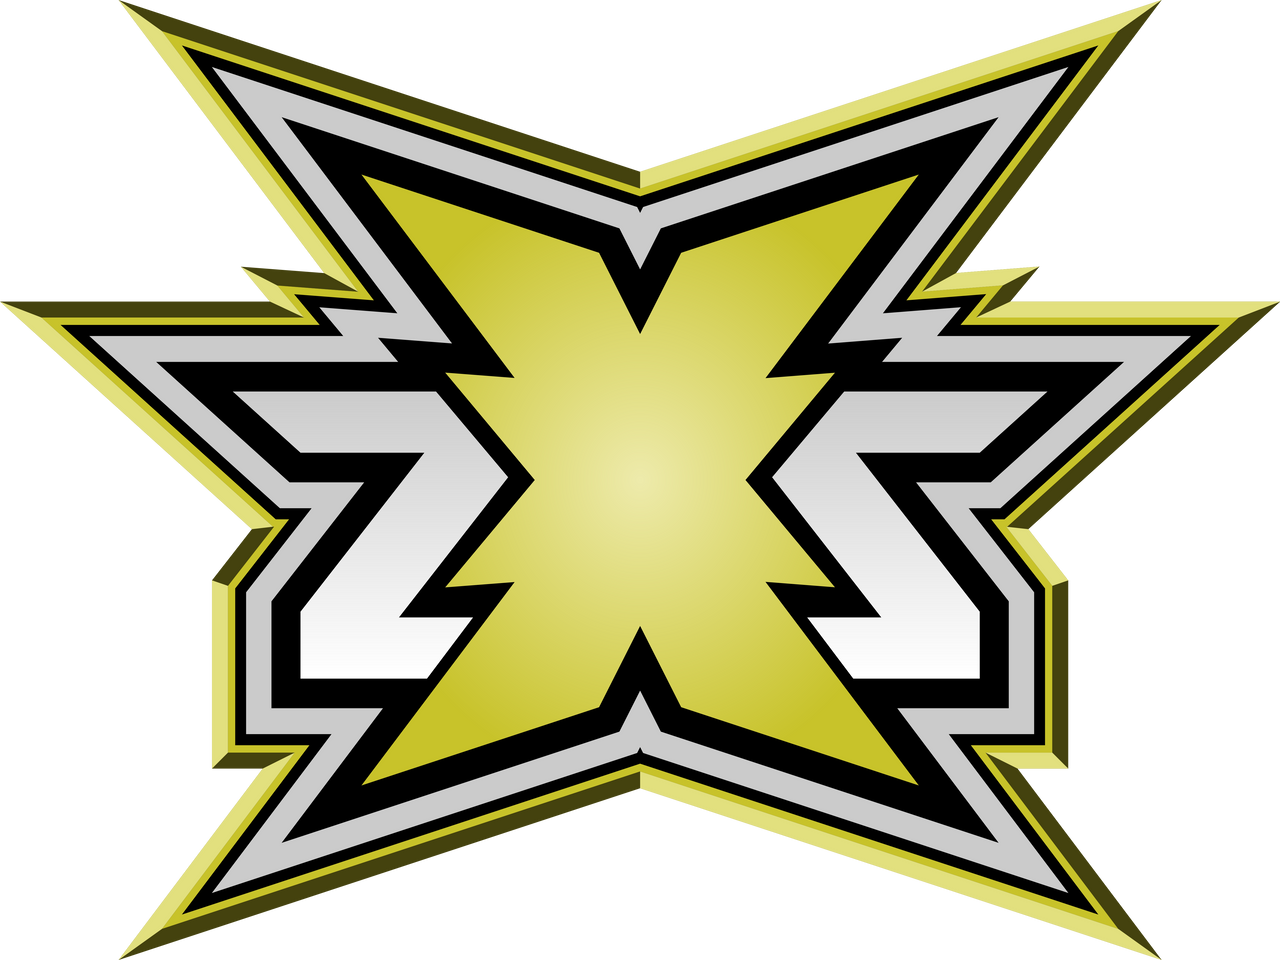 ZXS Wrestling Logo by DarkVoidPictures on DeviantArt